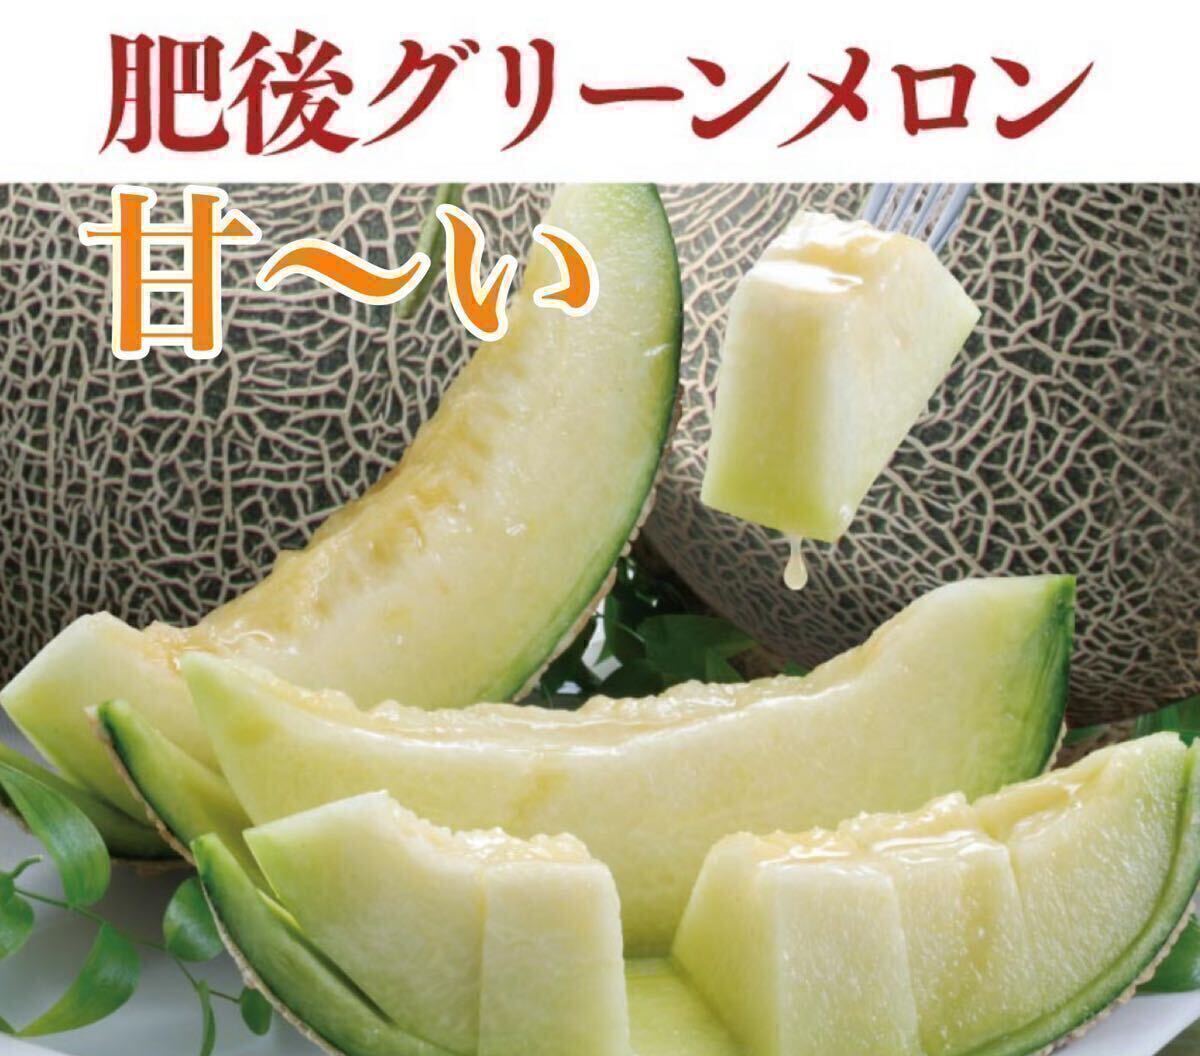 [.. север ] Kumamoto производство . после зеленый [ превосходящий товар 5L размер 2 шар комплект примерно 5k коробка включено Kumamoto фрукты 7